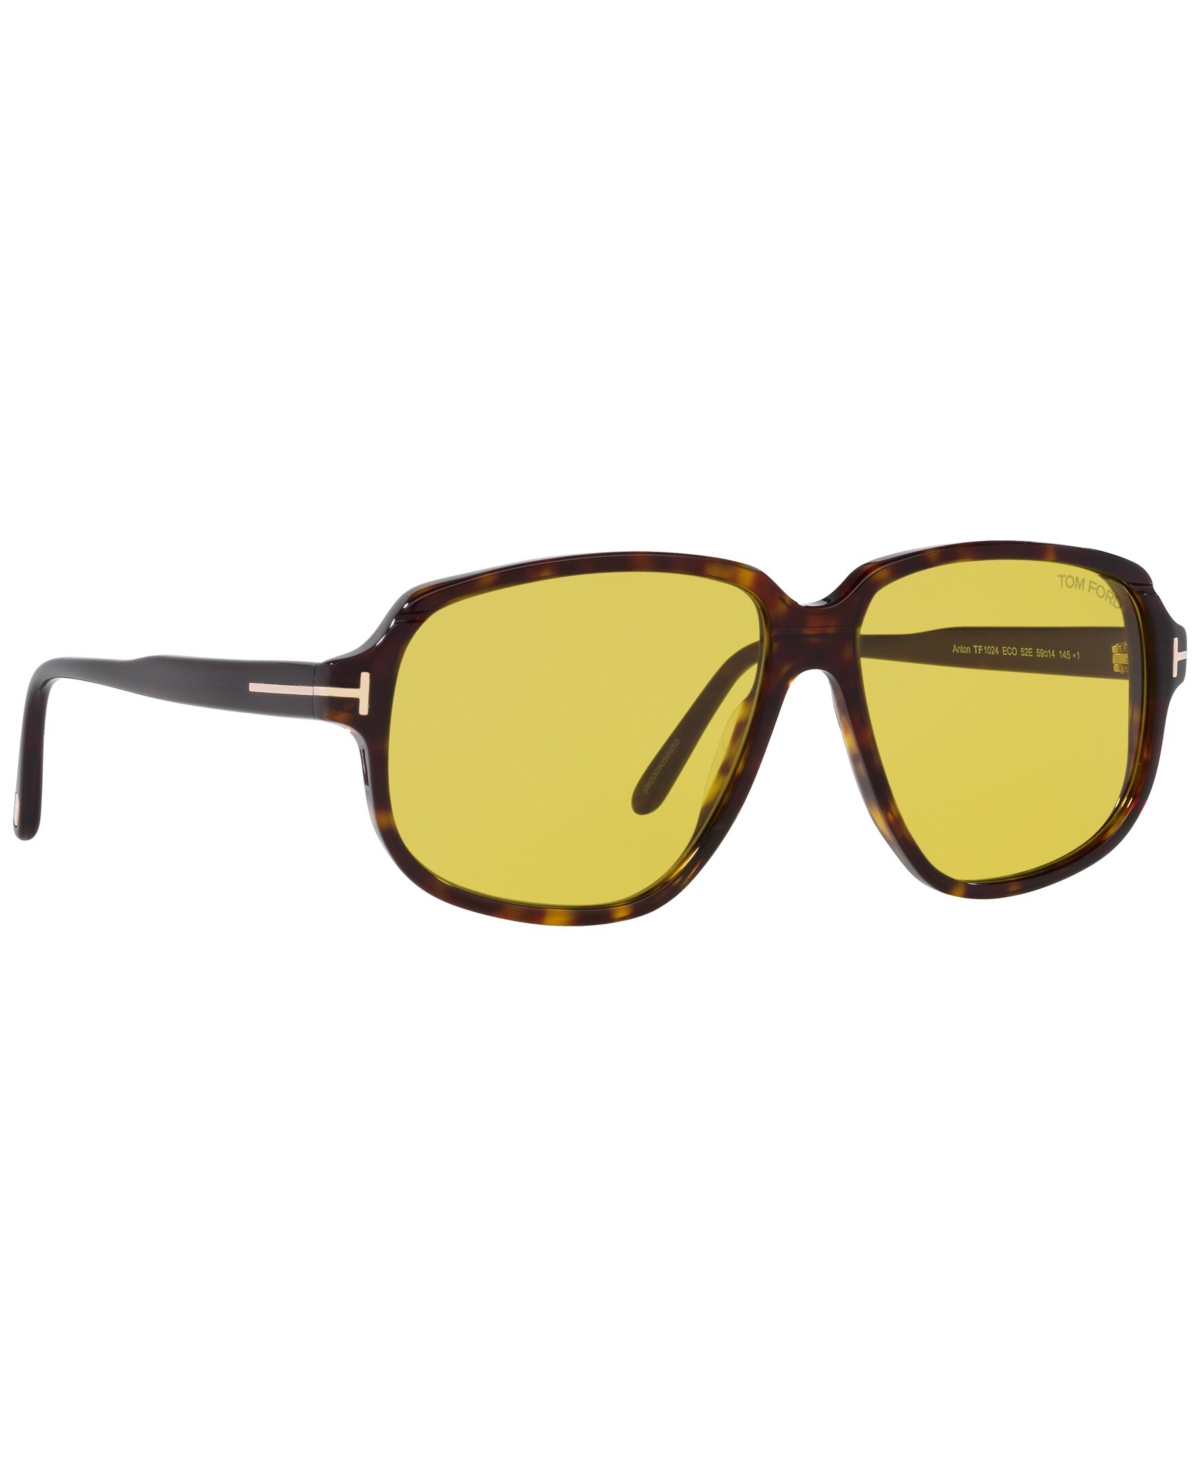 Tom Ford Men's Sunglasses, Anton In Tortoise Black,yellow